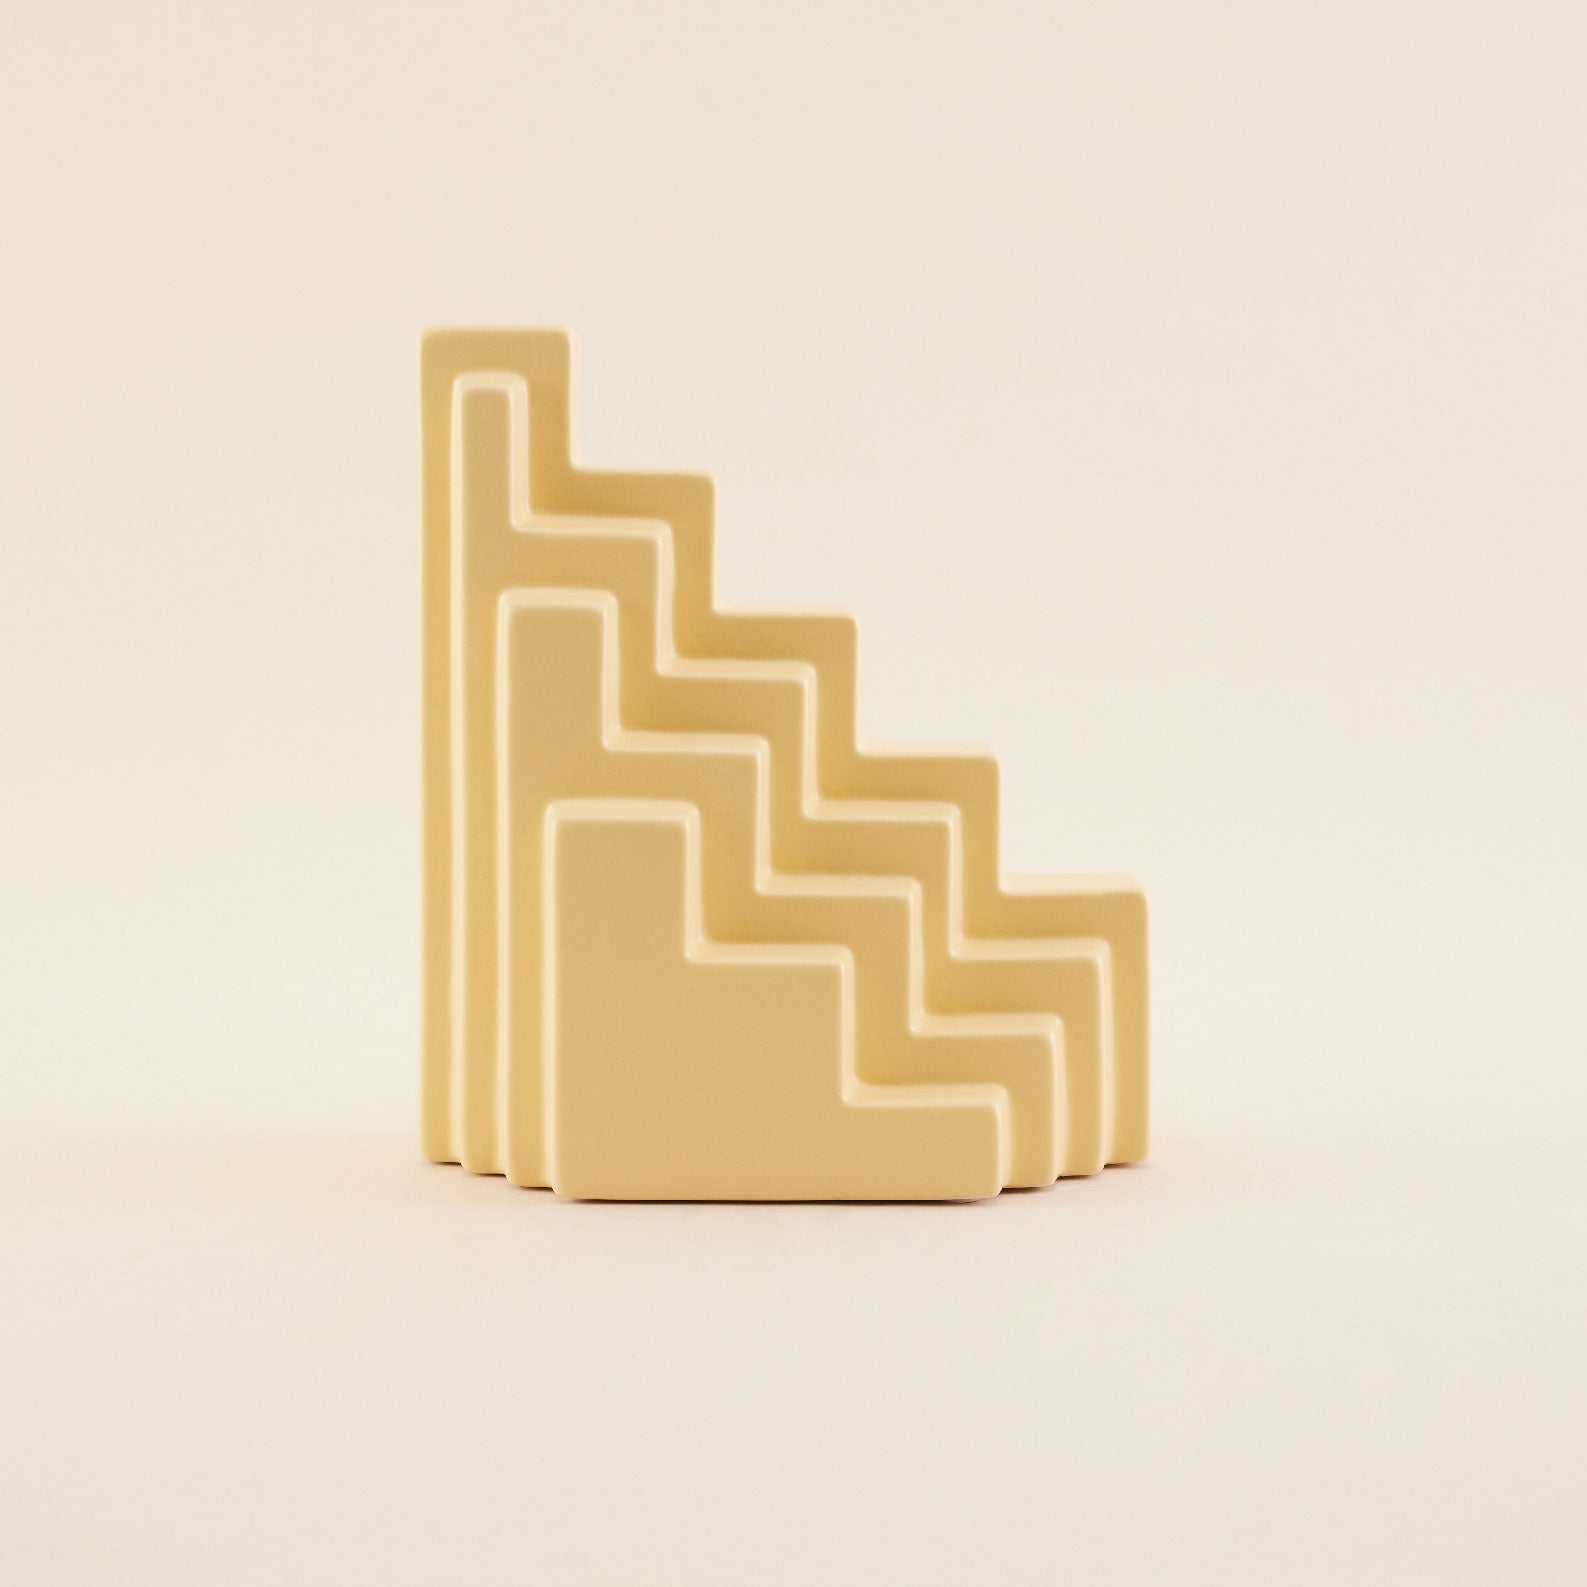 Stairs Ceramic Vase | แจกัน  เซรามิก